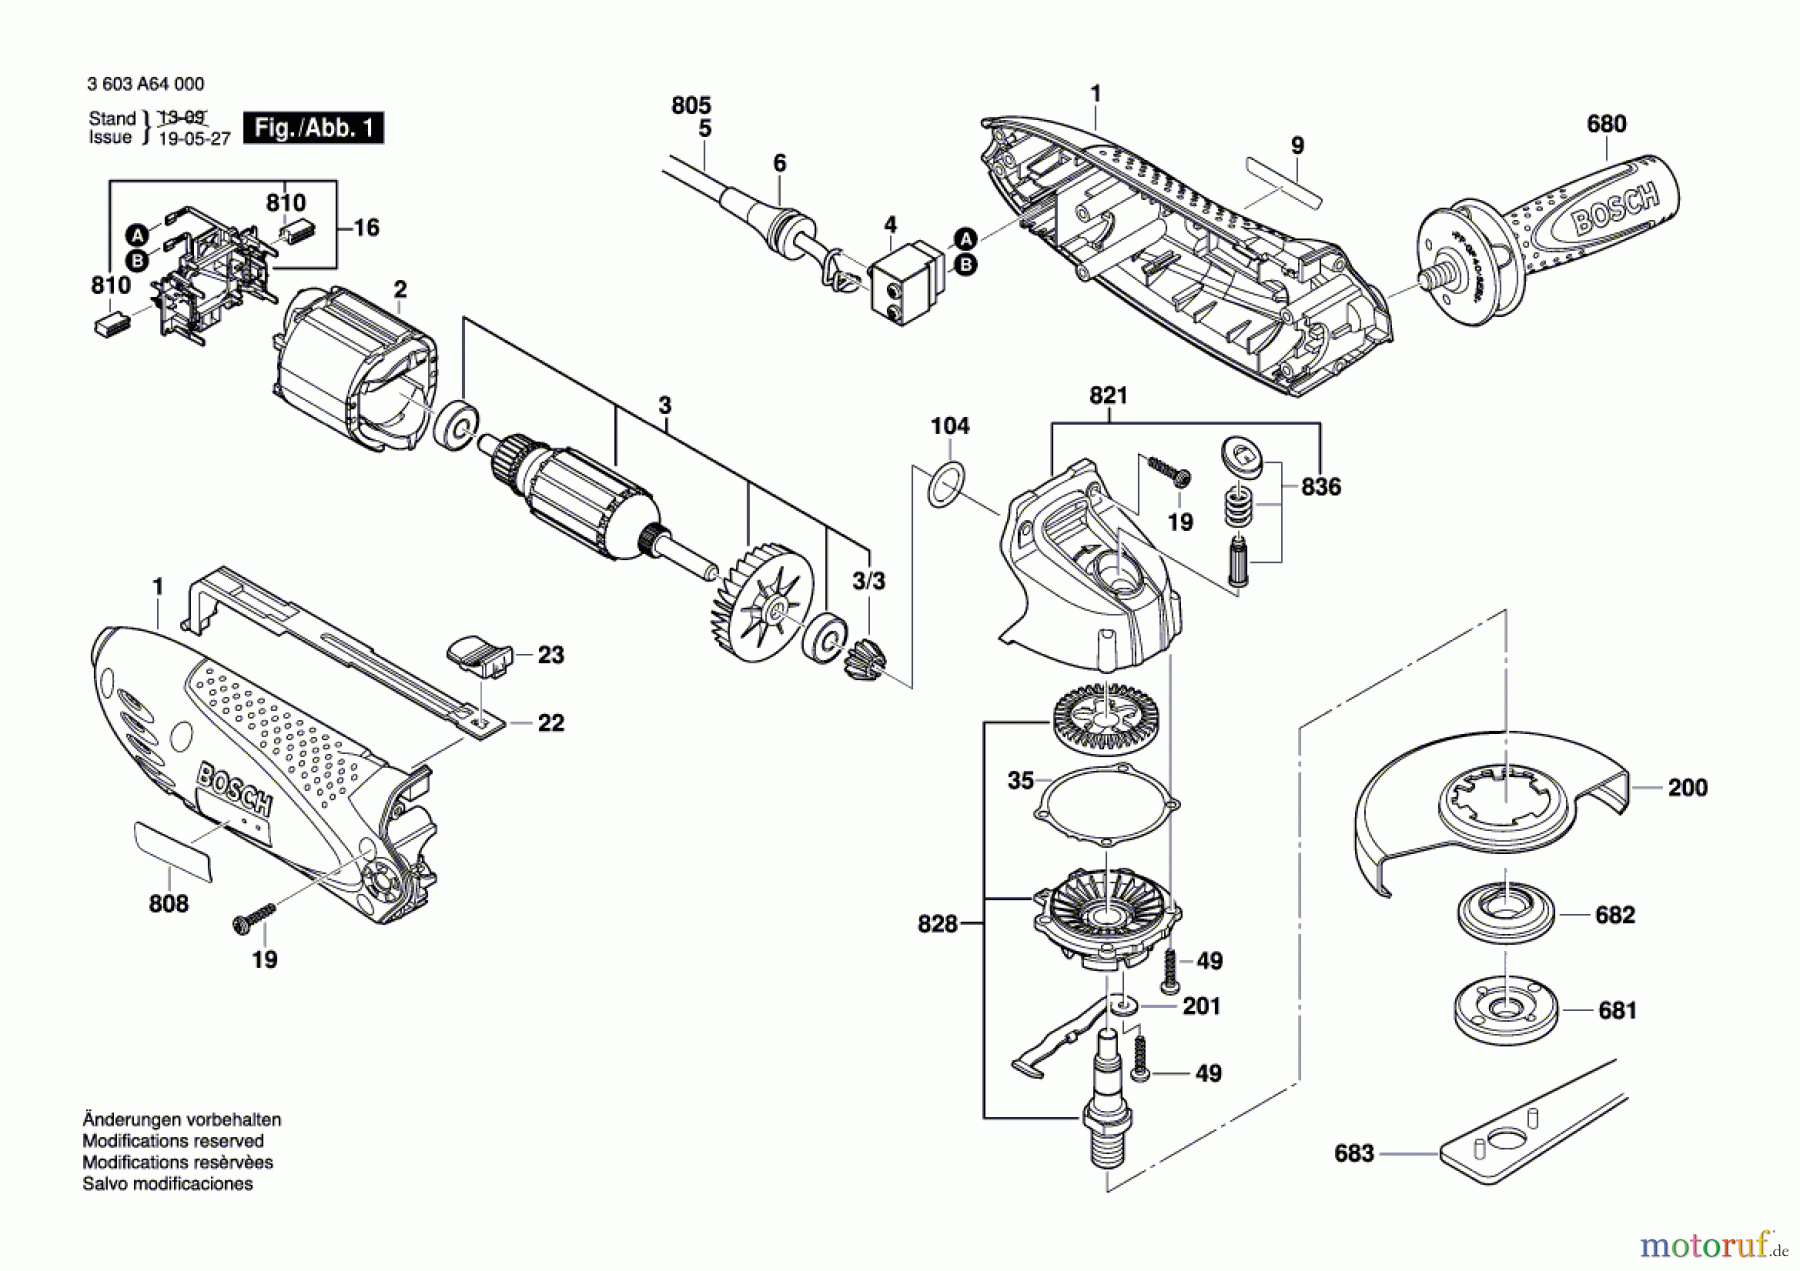  Bosch Werkzeug Winkelschleifer PWS 720-115 Seite 1